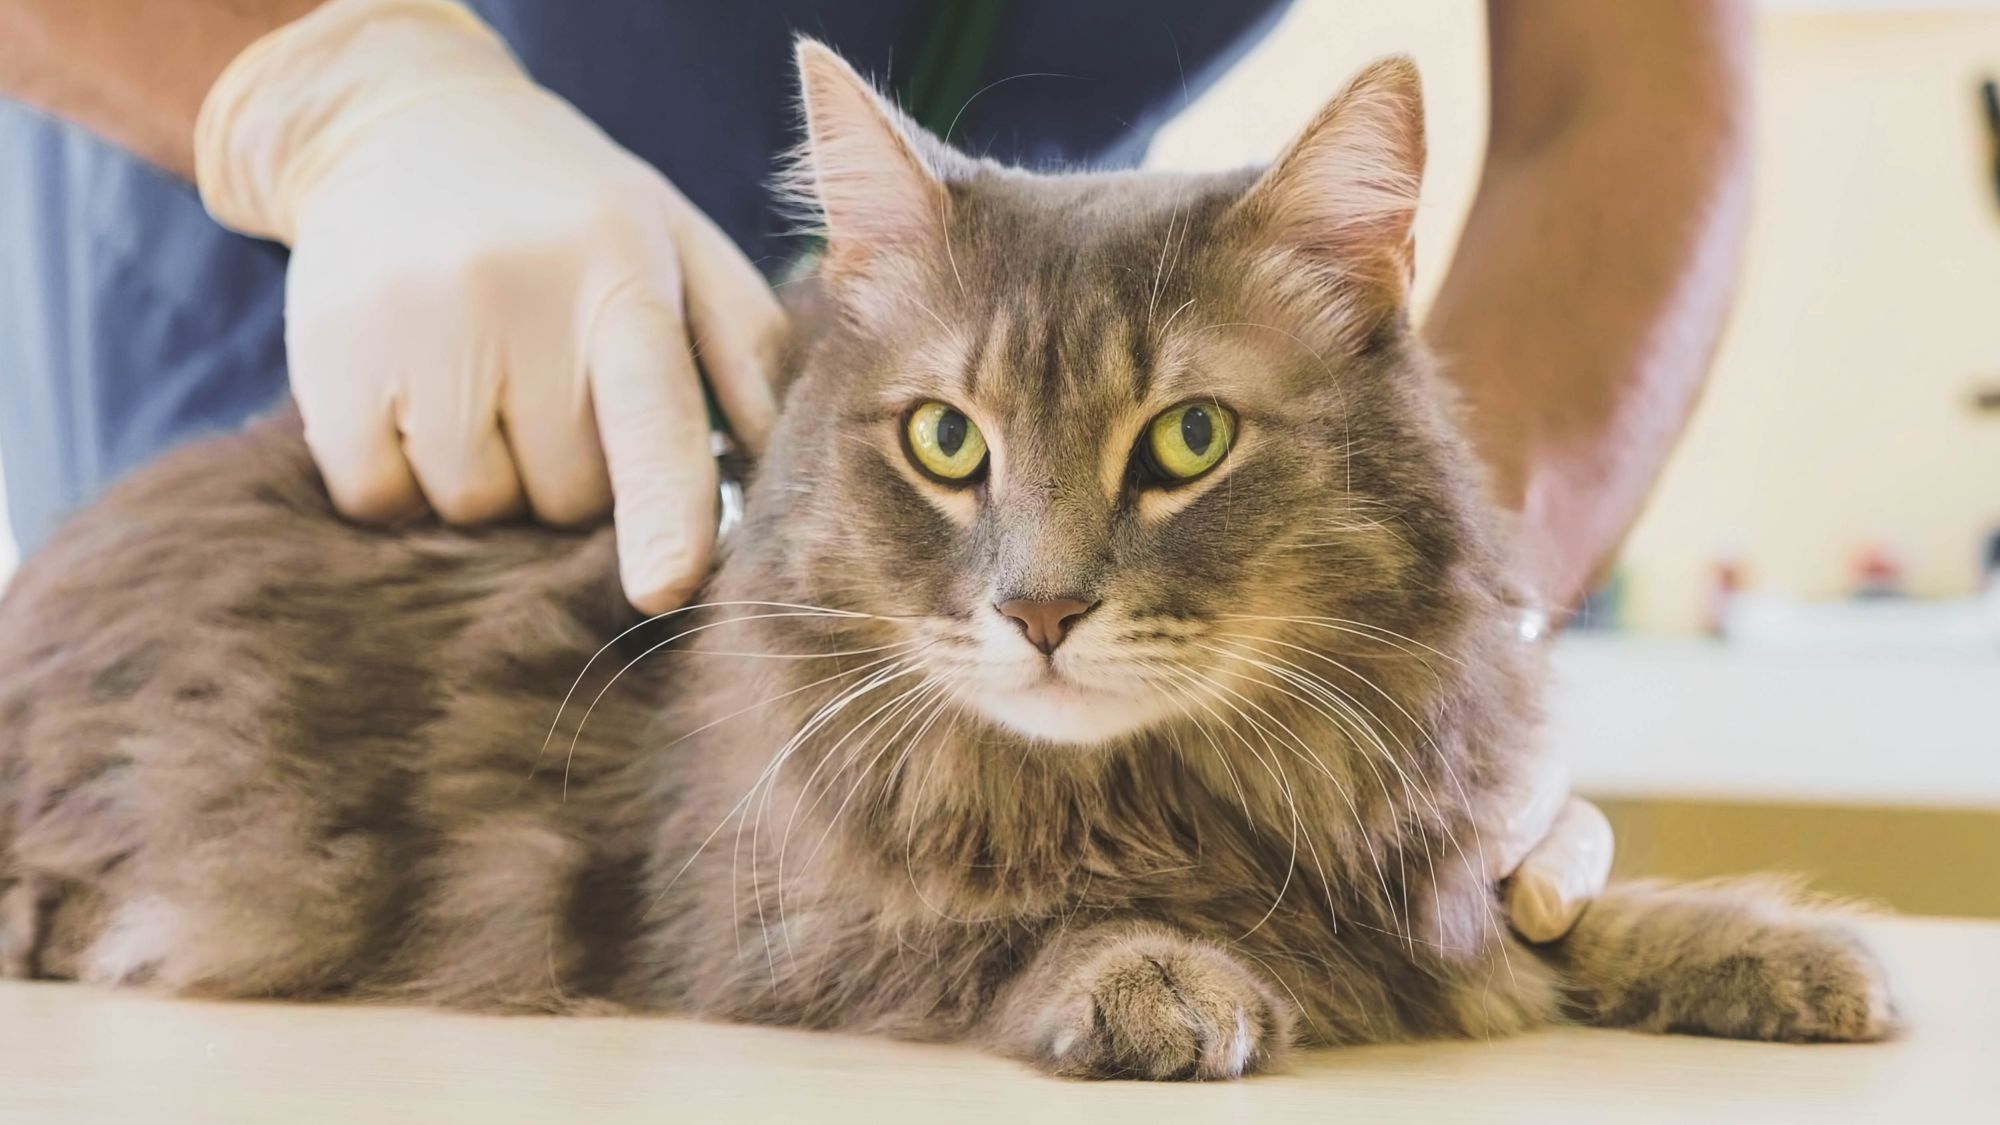 Cat at a vet check up